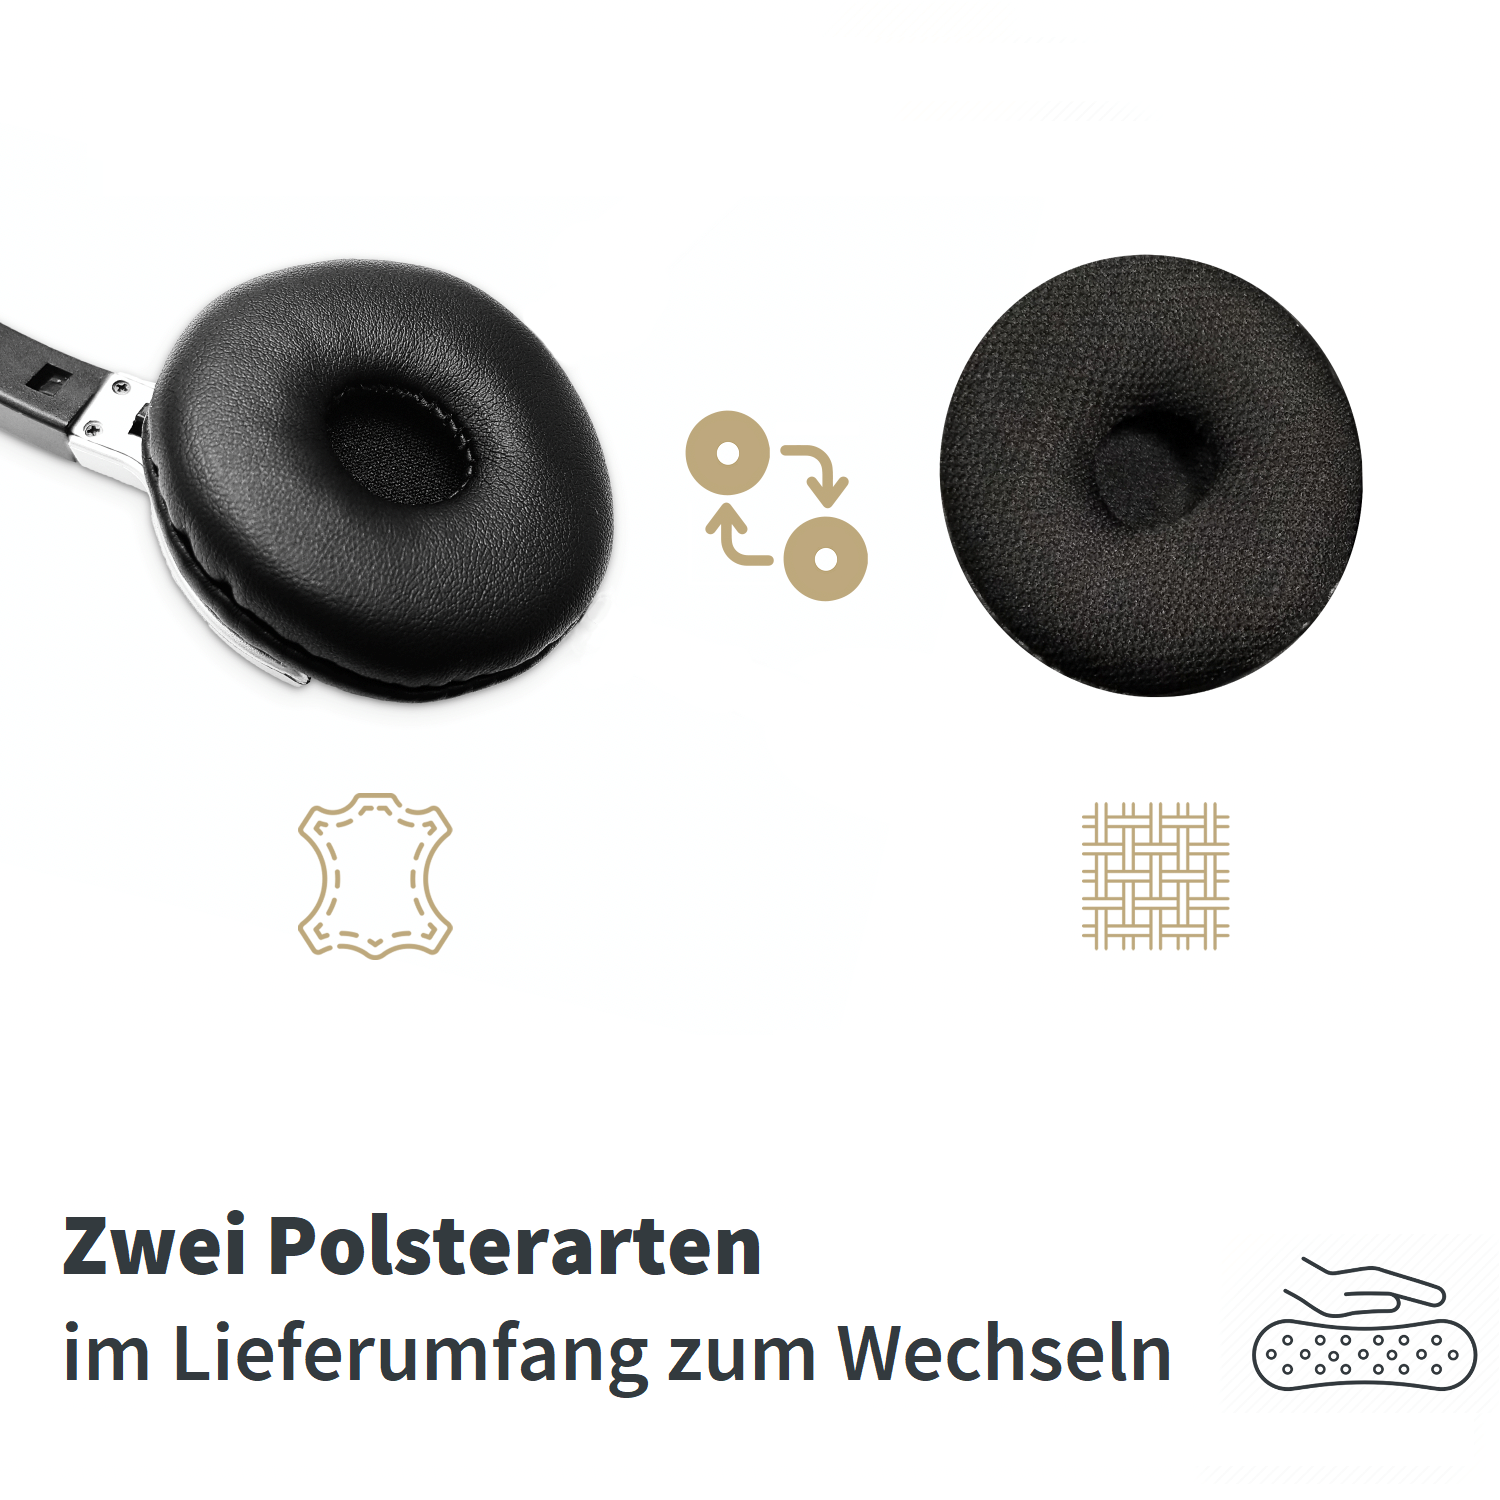 1-Ohr On-ear Kabel, für Unify mit Schwarz Headset GEQUDIO Headset